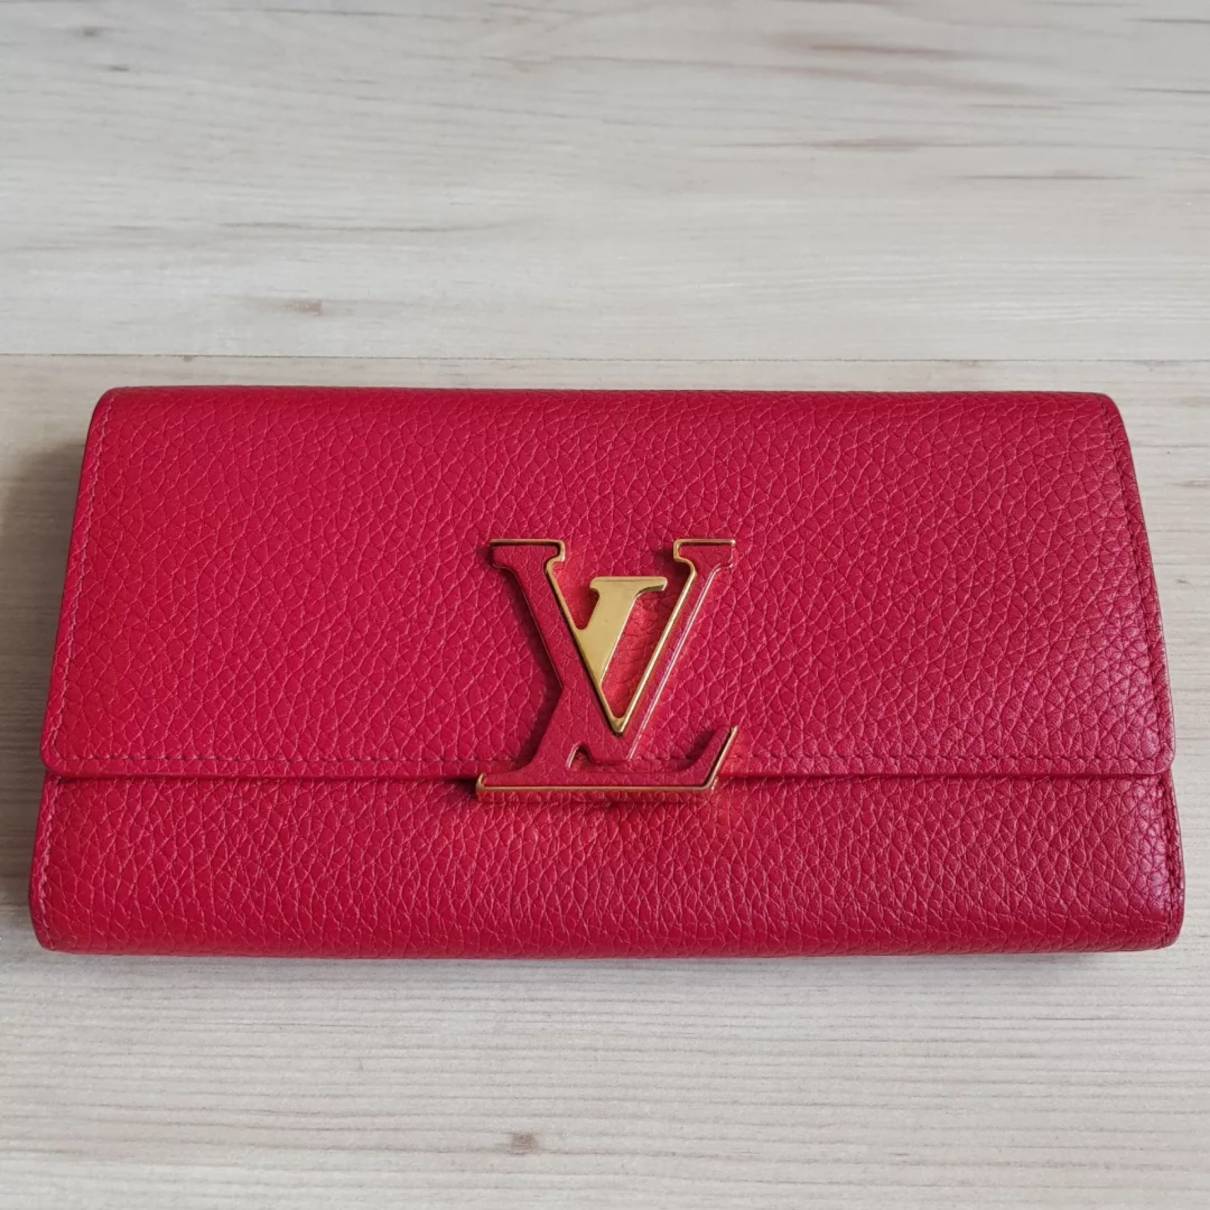 Louis Vuitton Capucines Leather Wallet